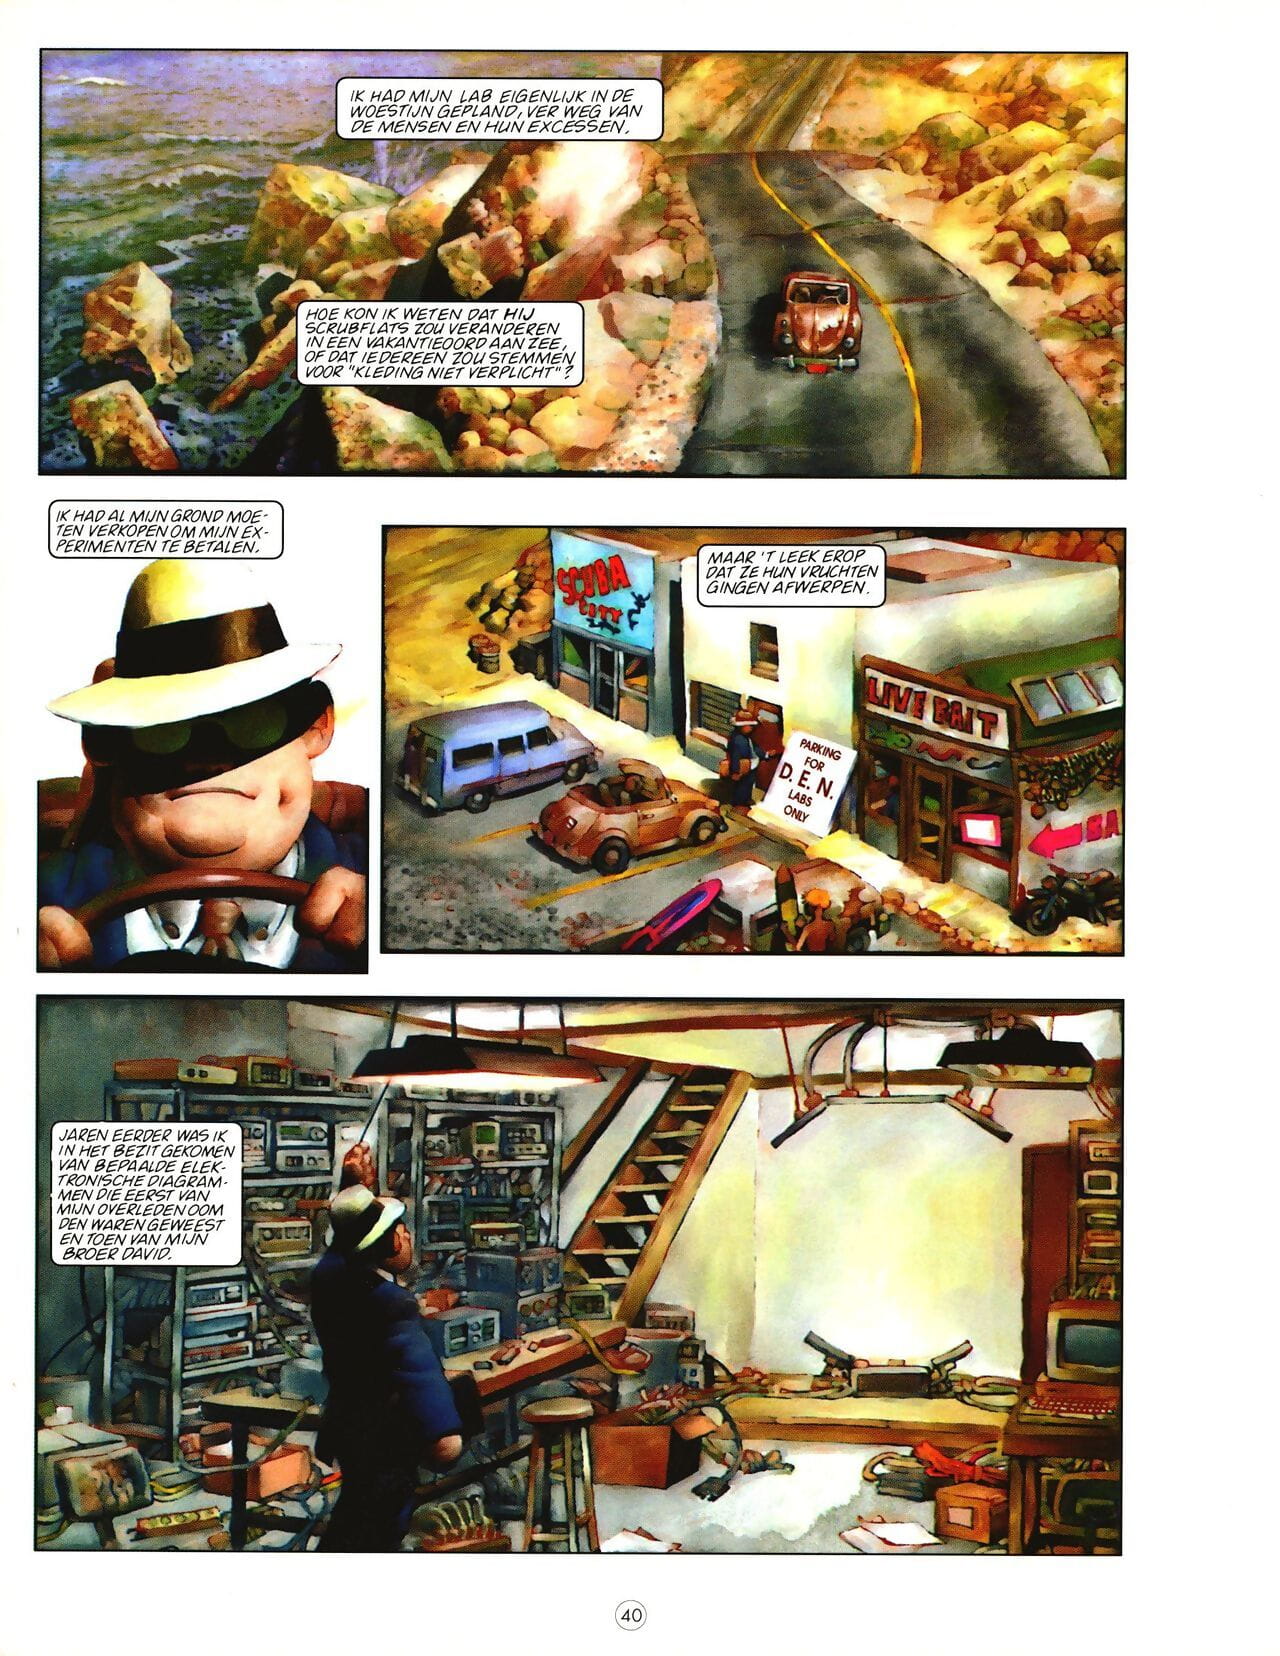 เพนท์เฮาส์ comix นิตยสาร 01 ส่วนหนึ่ง 2 page 1